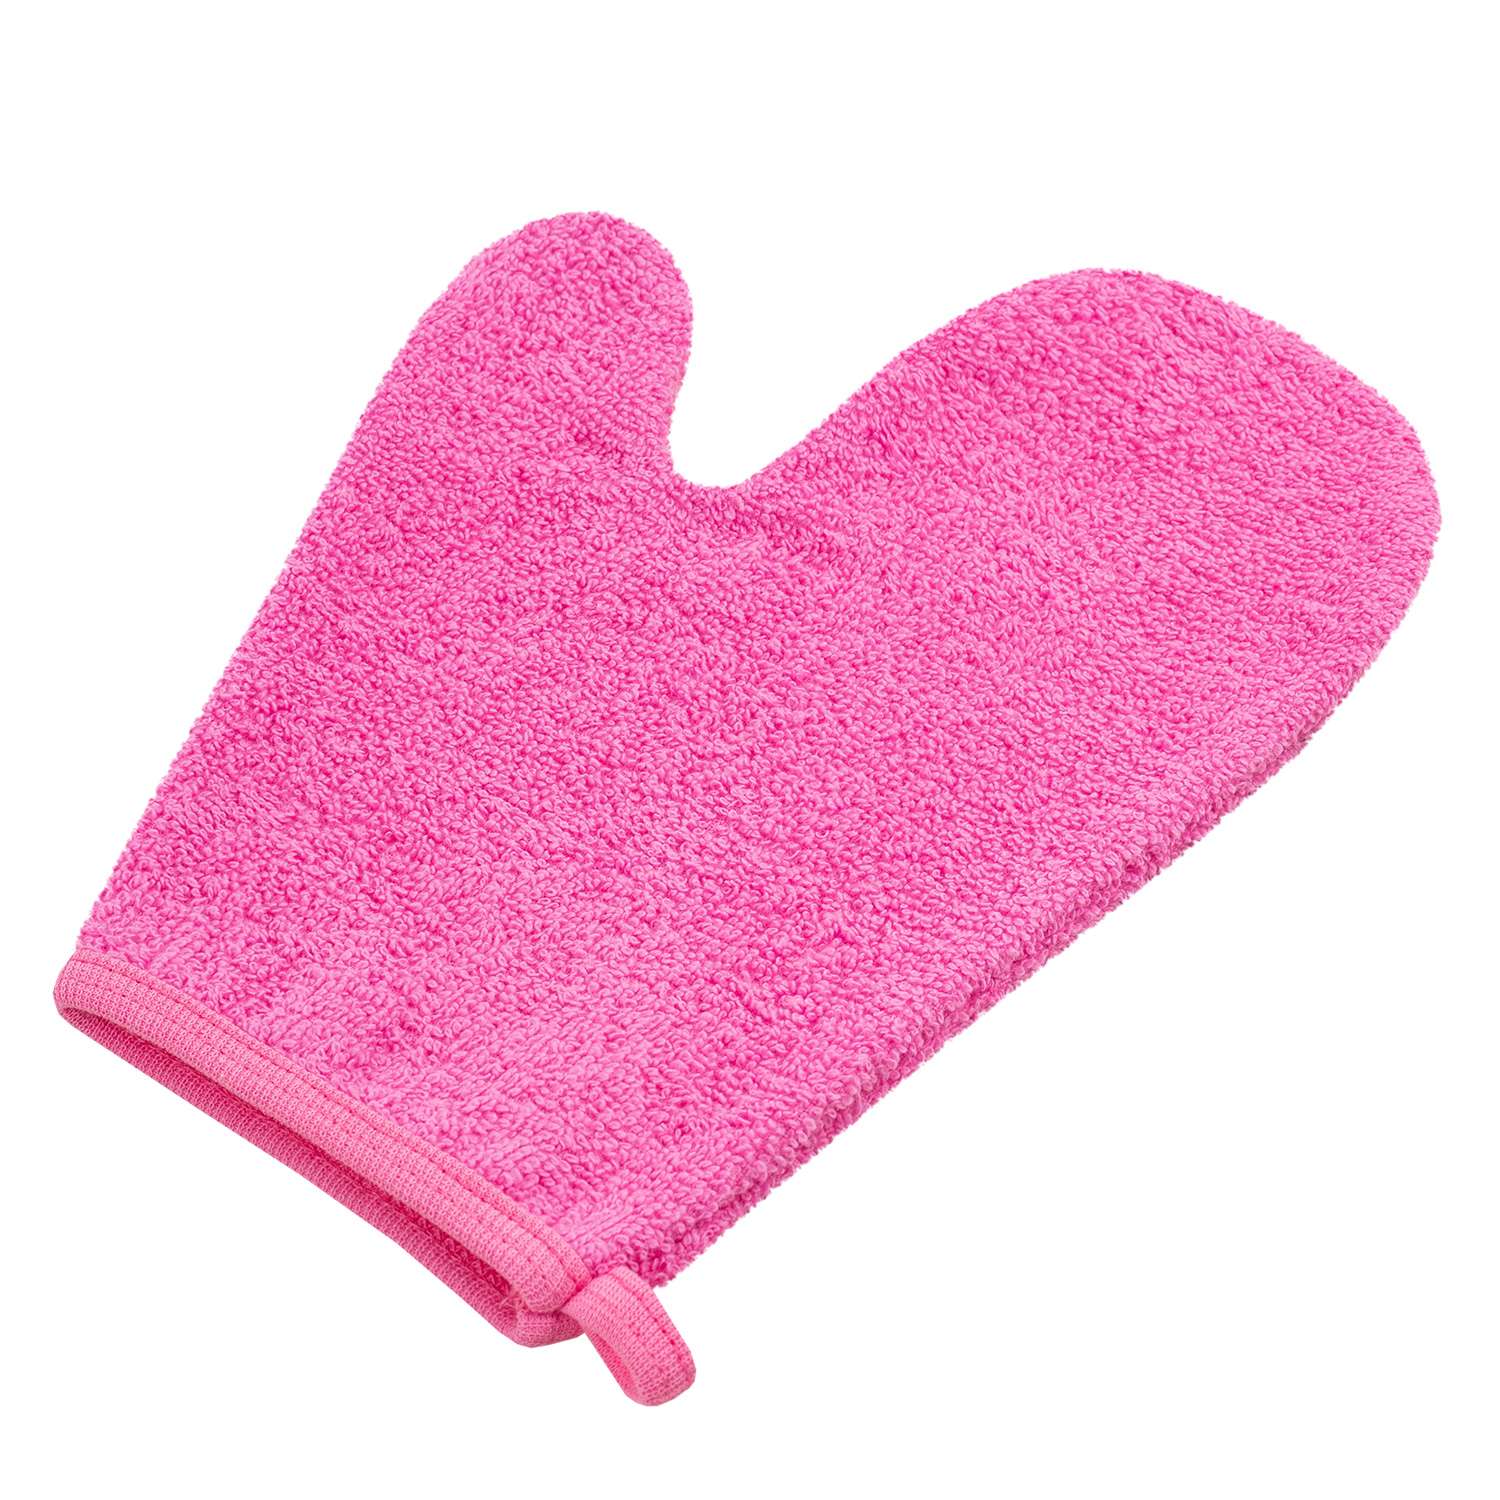 Детская мочалка FunEcotex Розовая махровая для купания рукавичка - фото 1